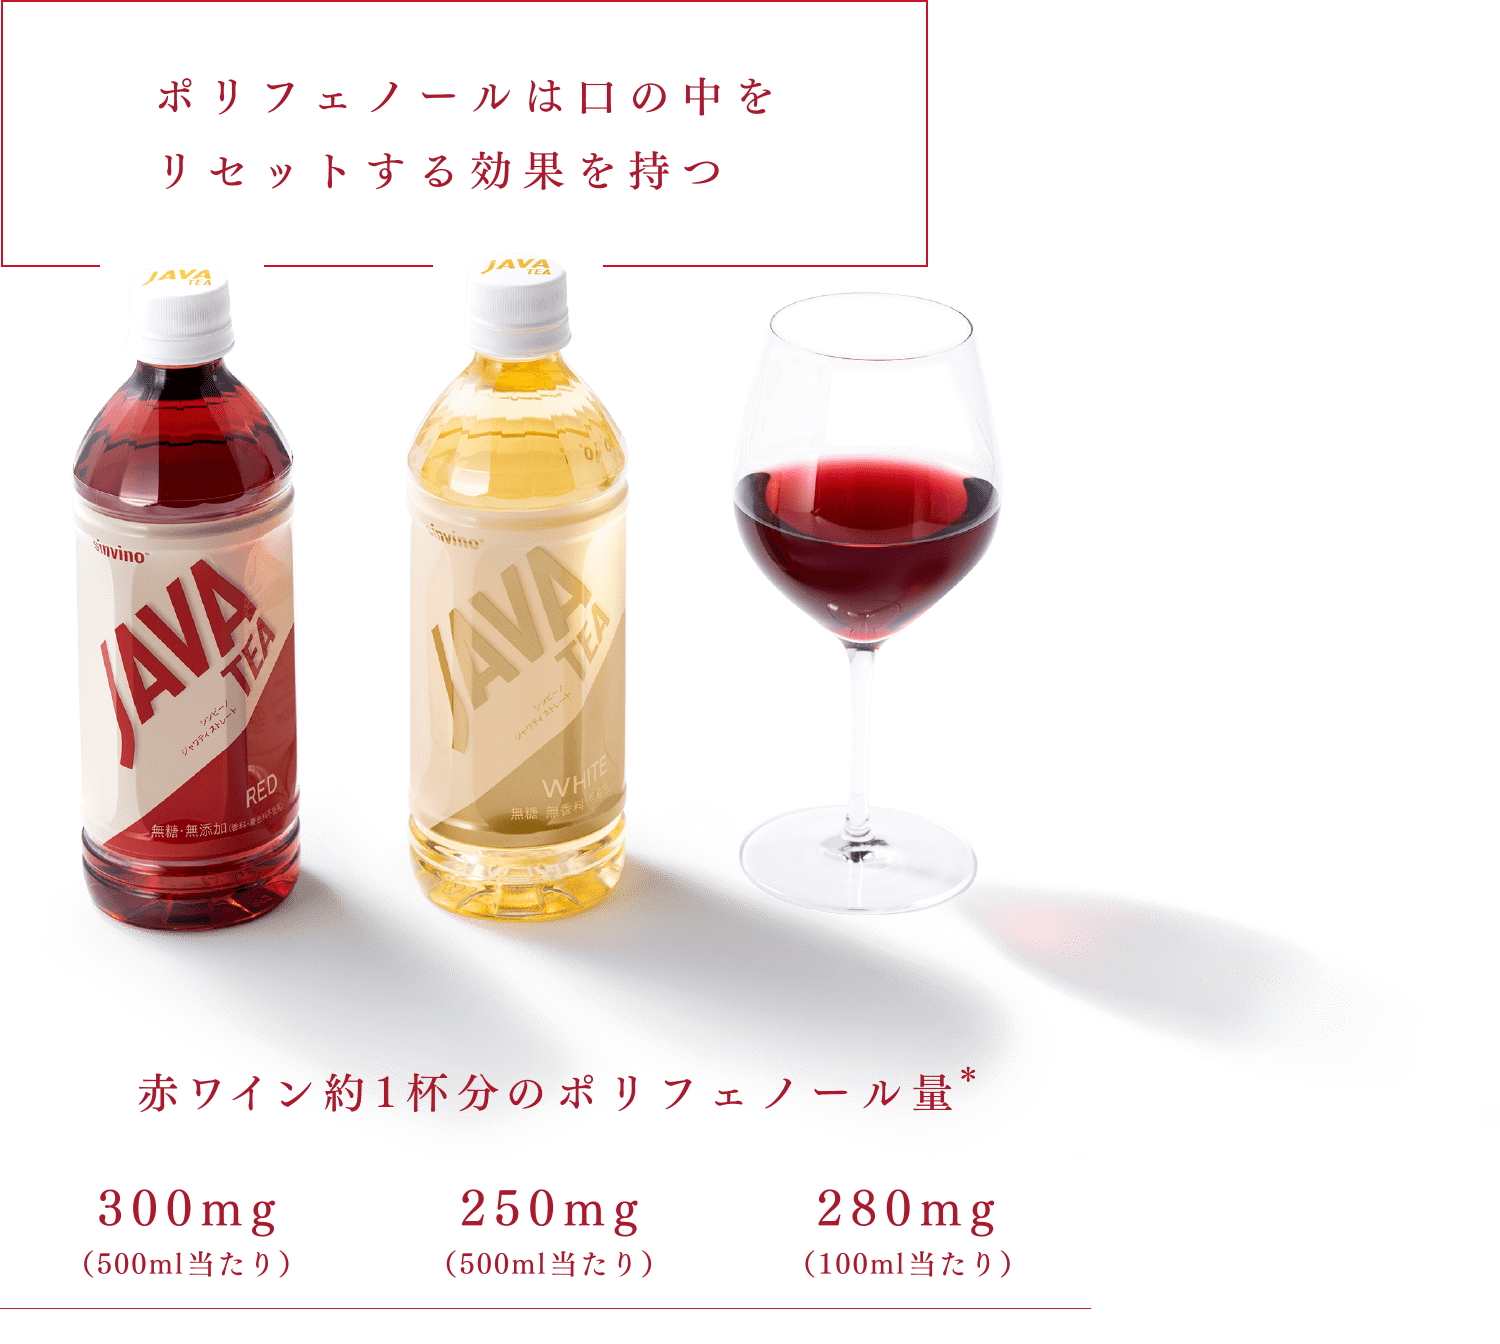 ポリフェノールは口の中をリセットする効果を持つ。赤ワイン約1杯分のポリフェノール量* JAVATEAレッド（300mg/500mlあたり） JAVATEAホワイト（250mg/500mlあたり） 赤ワイン（280mg/100mlあたり）